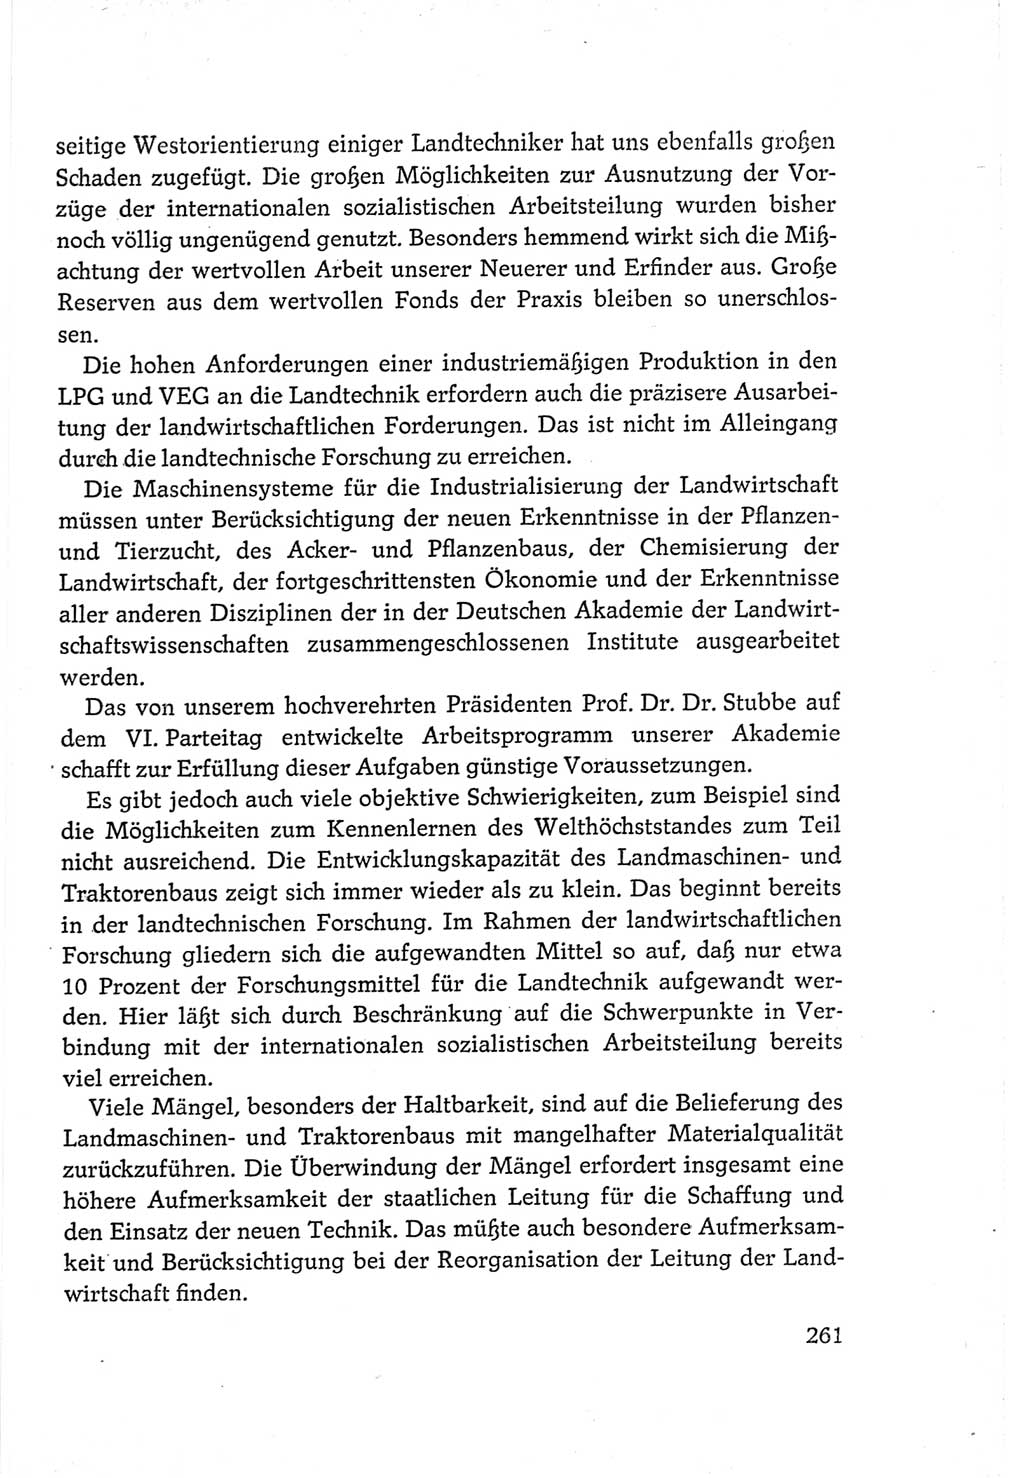 Protokoll der Verhandlungen des Ⅵ. Parteitages der Sozialistischen Einheitspartei Deutschlands (SED) [Deutsche Demokratische Republik (DDR)] 1963, Band Ⅲ, Seite 261 (Prot. Verh. Ⅵ. PT SED DDR 1963, Bd. Ⅲ, S. 261)